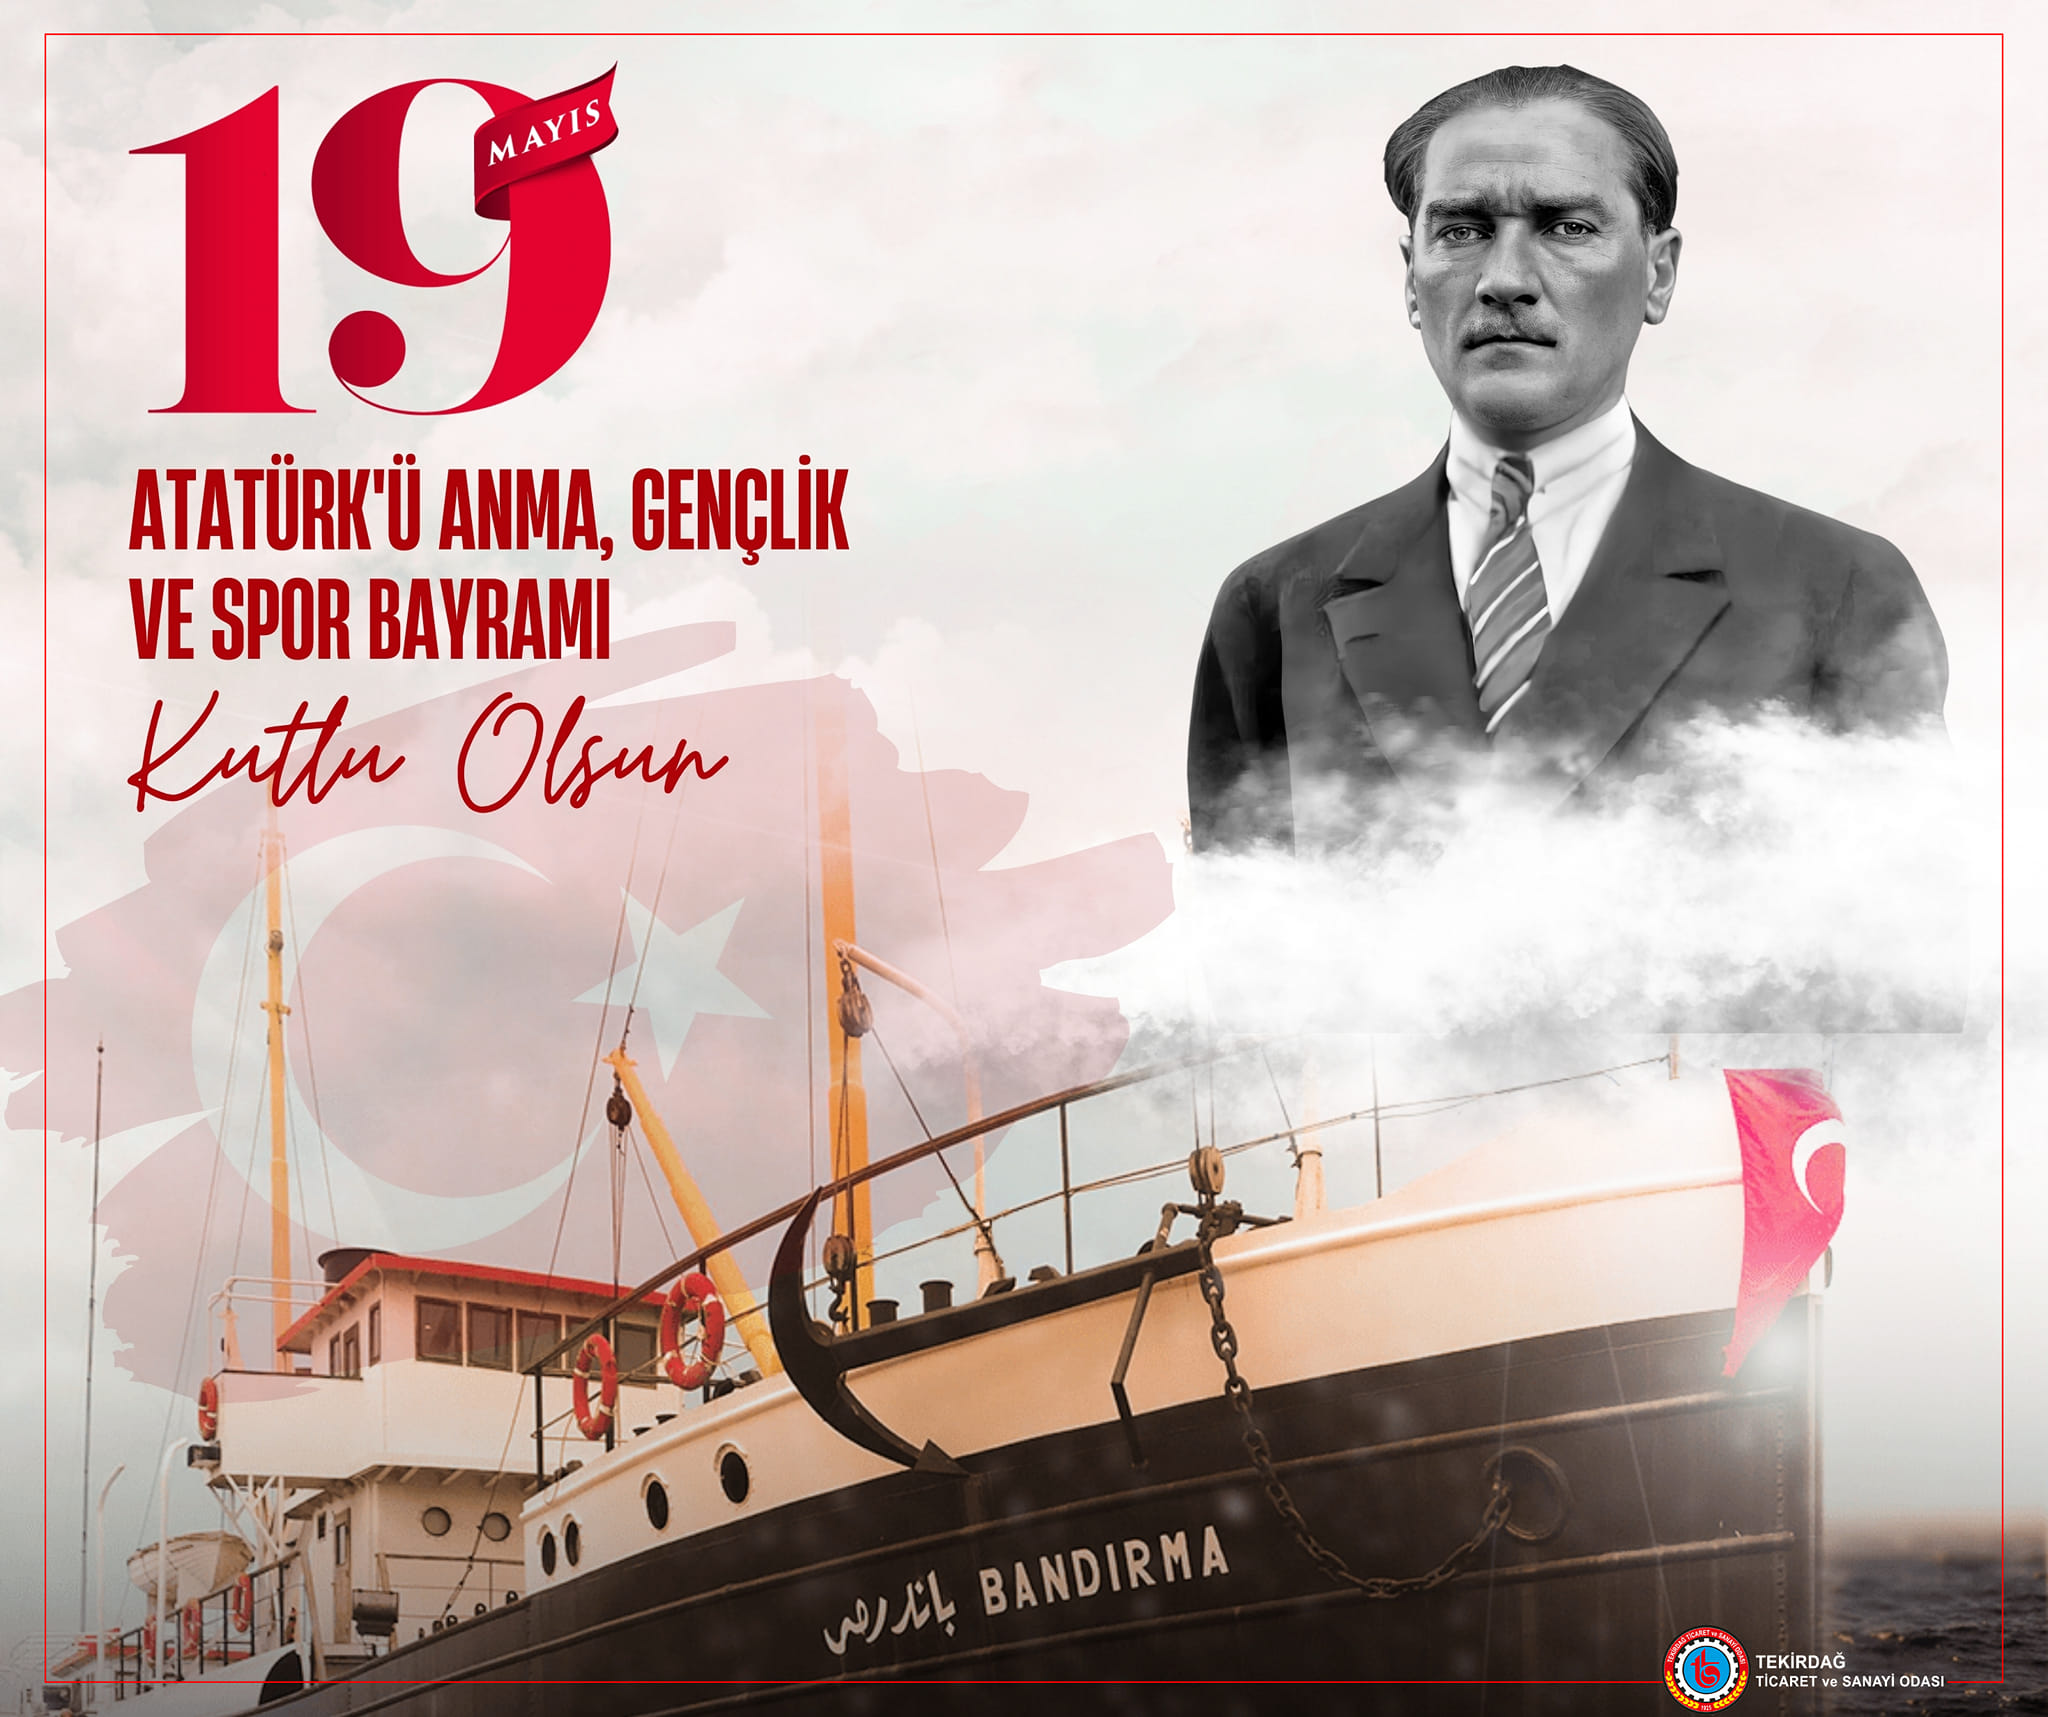 Gazi Mustafa Kemal Atatürk ve Silah Arkadaşlarının 105 Yıl Önce Başlattıkları Mücadele